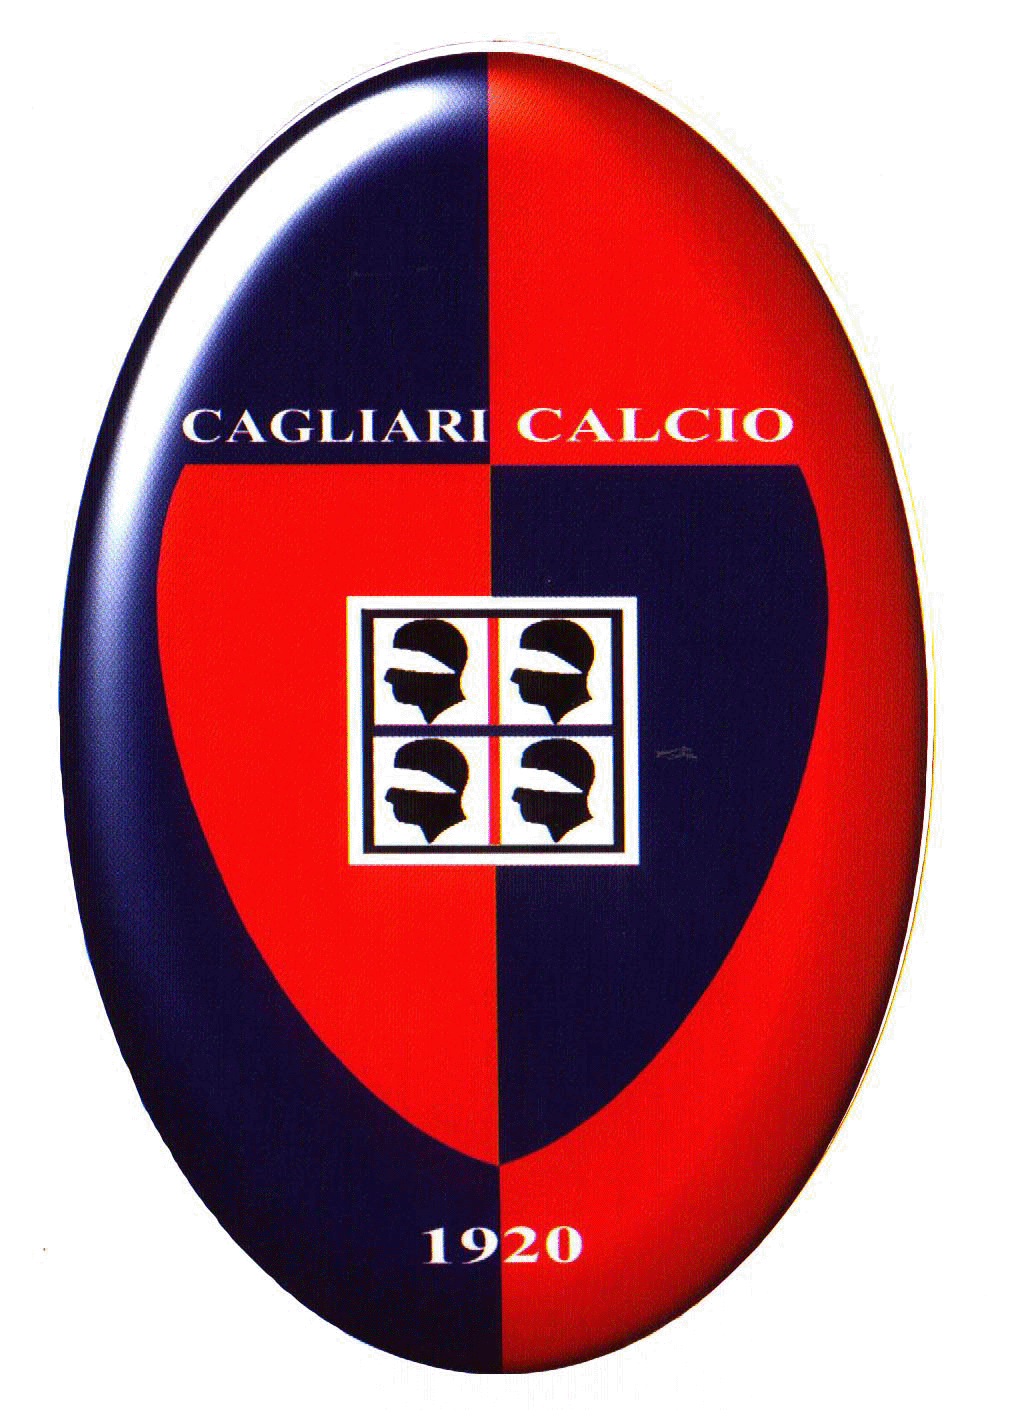 کالیاری (Cagliari)